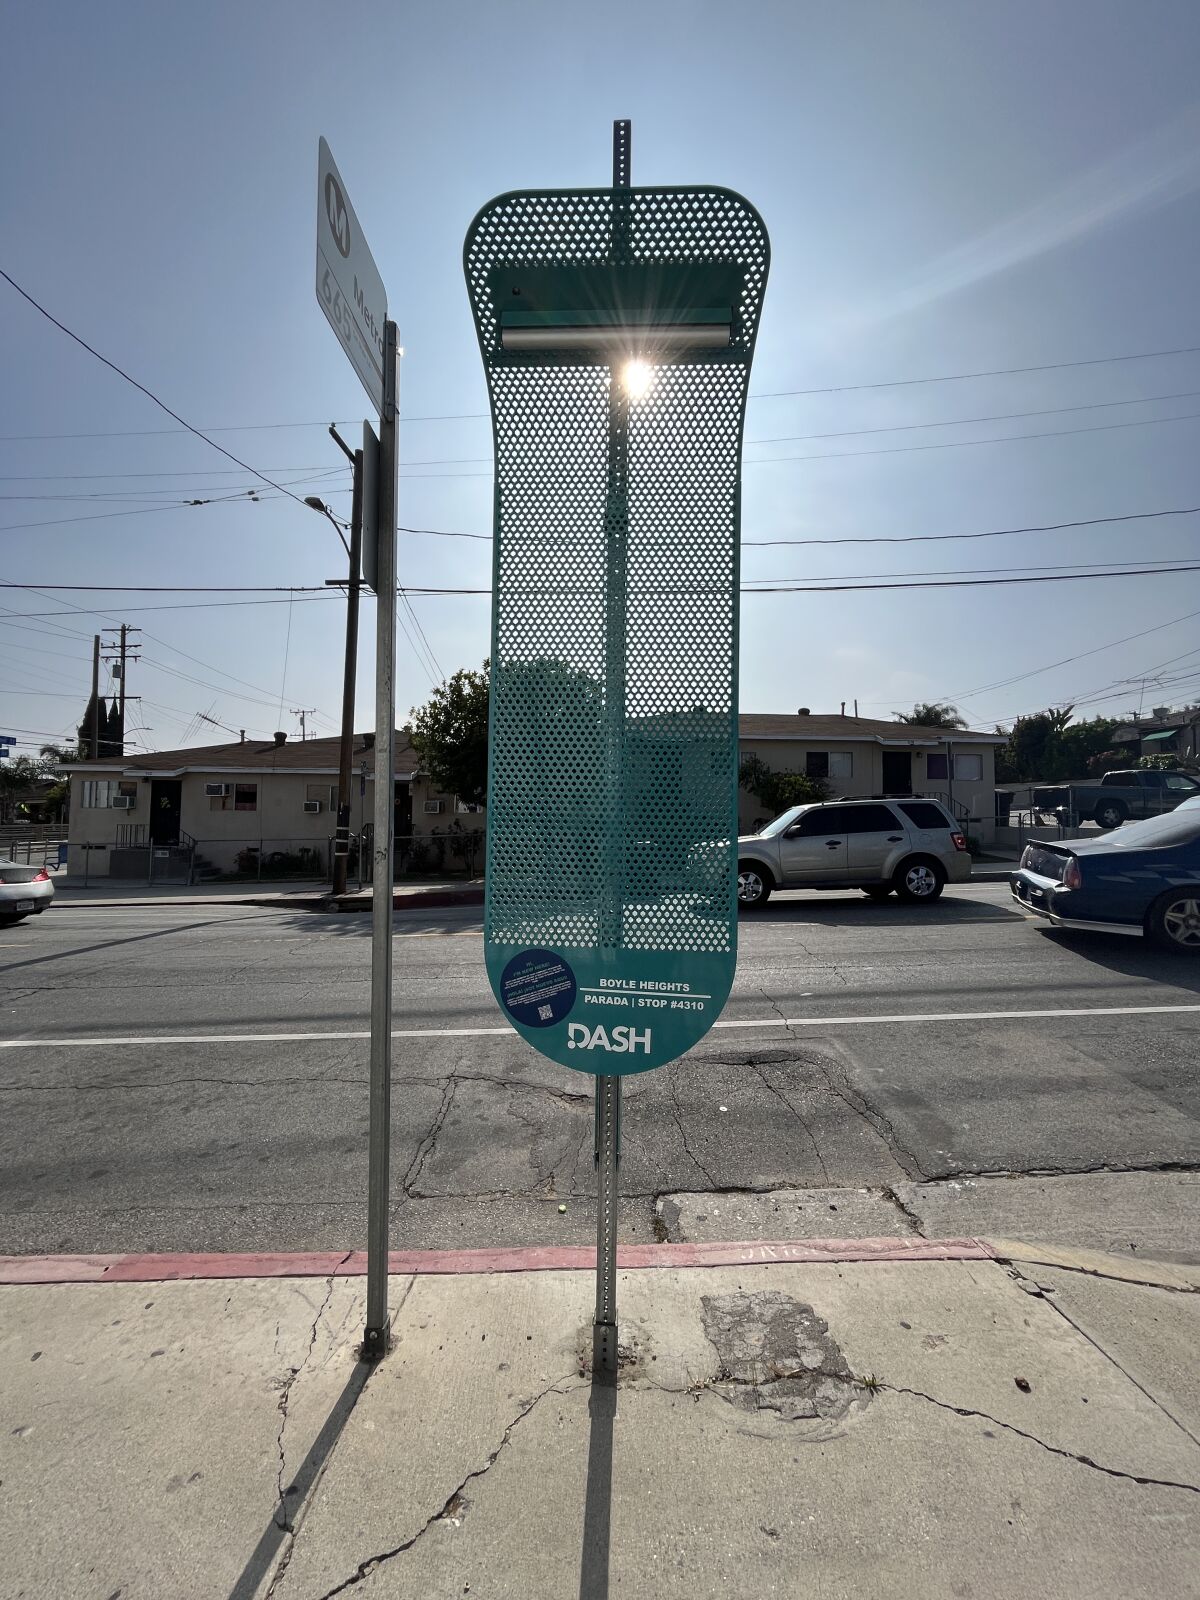 قطعة معدنية مثقبة متصلة بعمود شارع تحجب الشمس عن المنظر في شارع مشمس في لوس أنجلوس